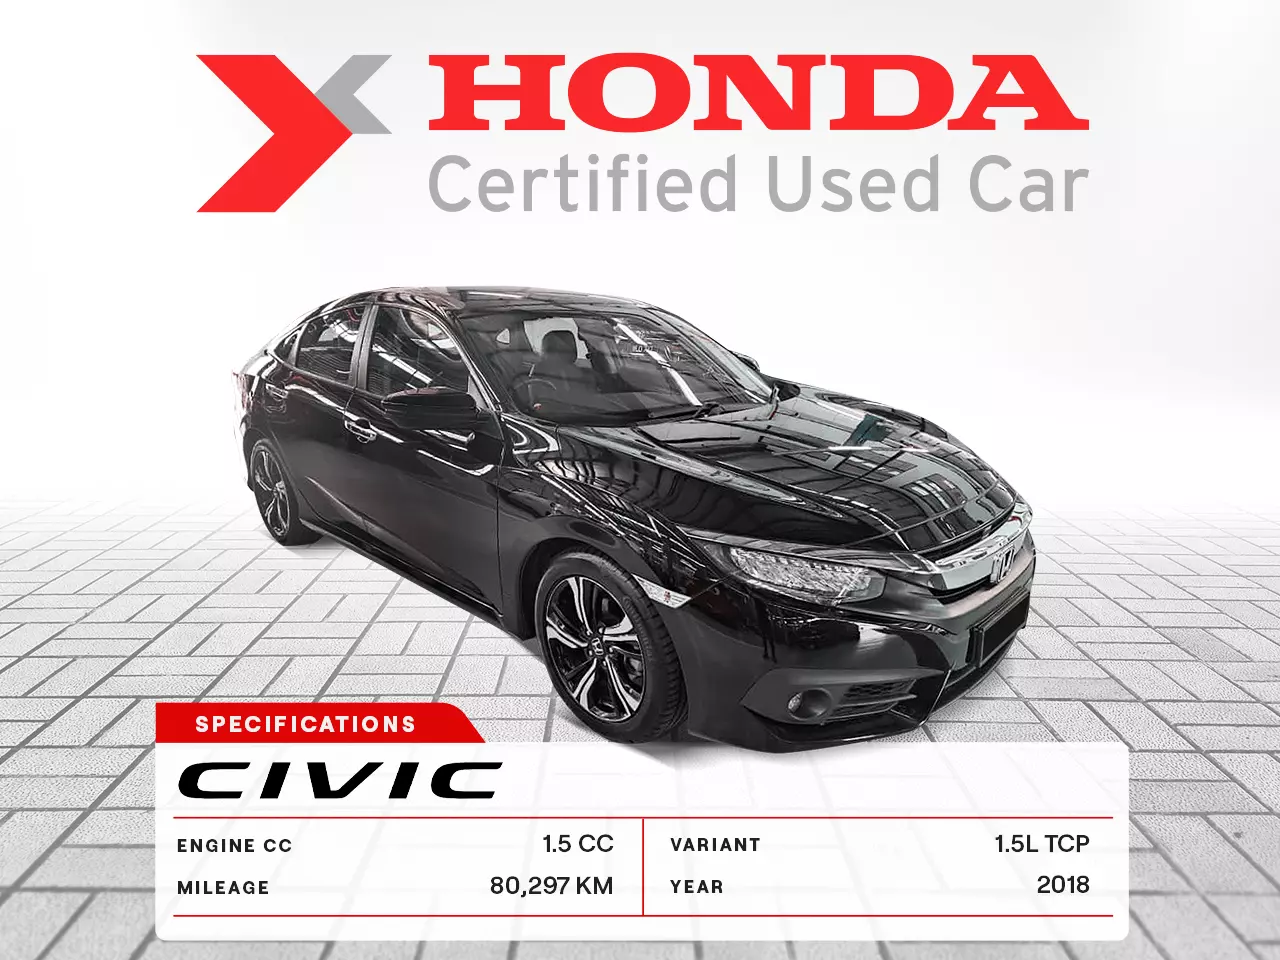 2018 Honda Civic 1.5L TCP